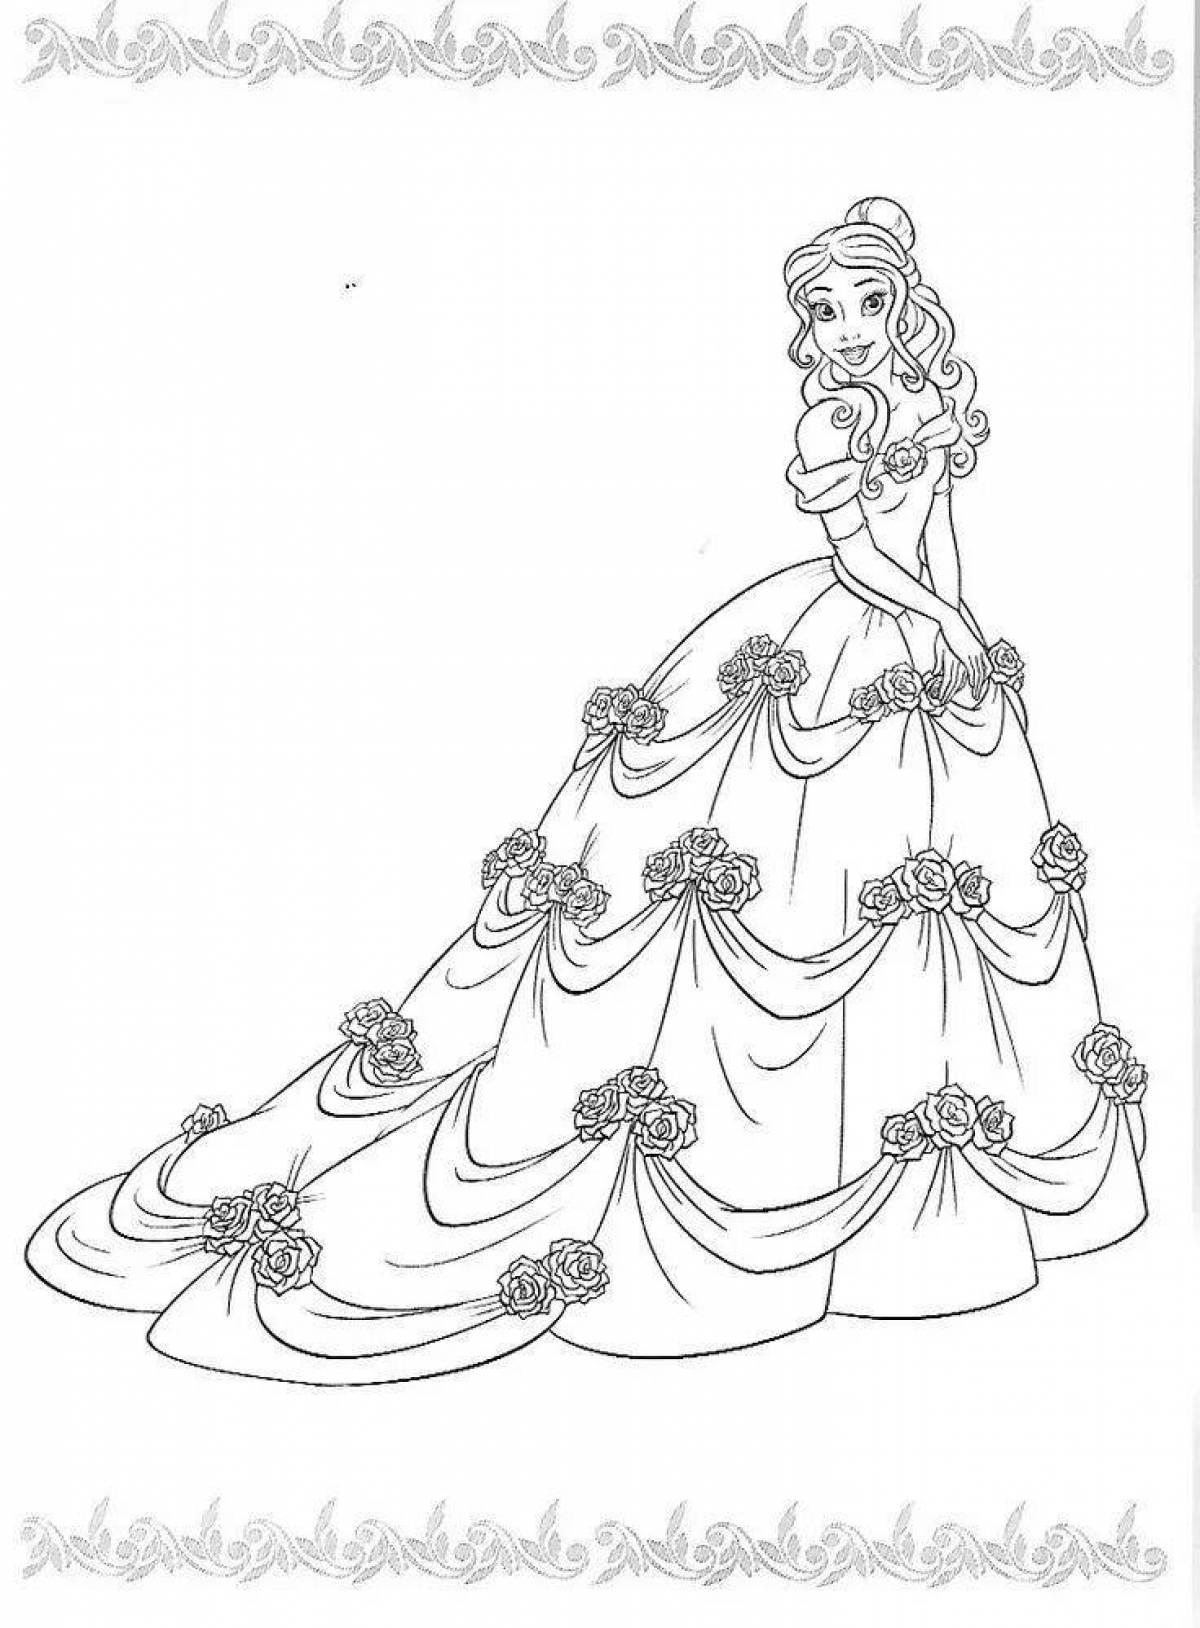 Beautiful coloring book for girls princesses in beautiful dresses